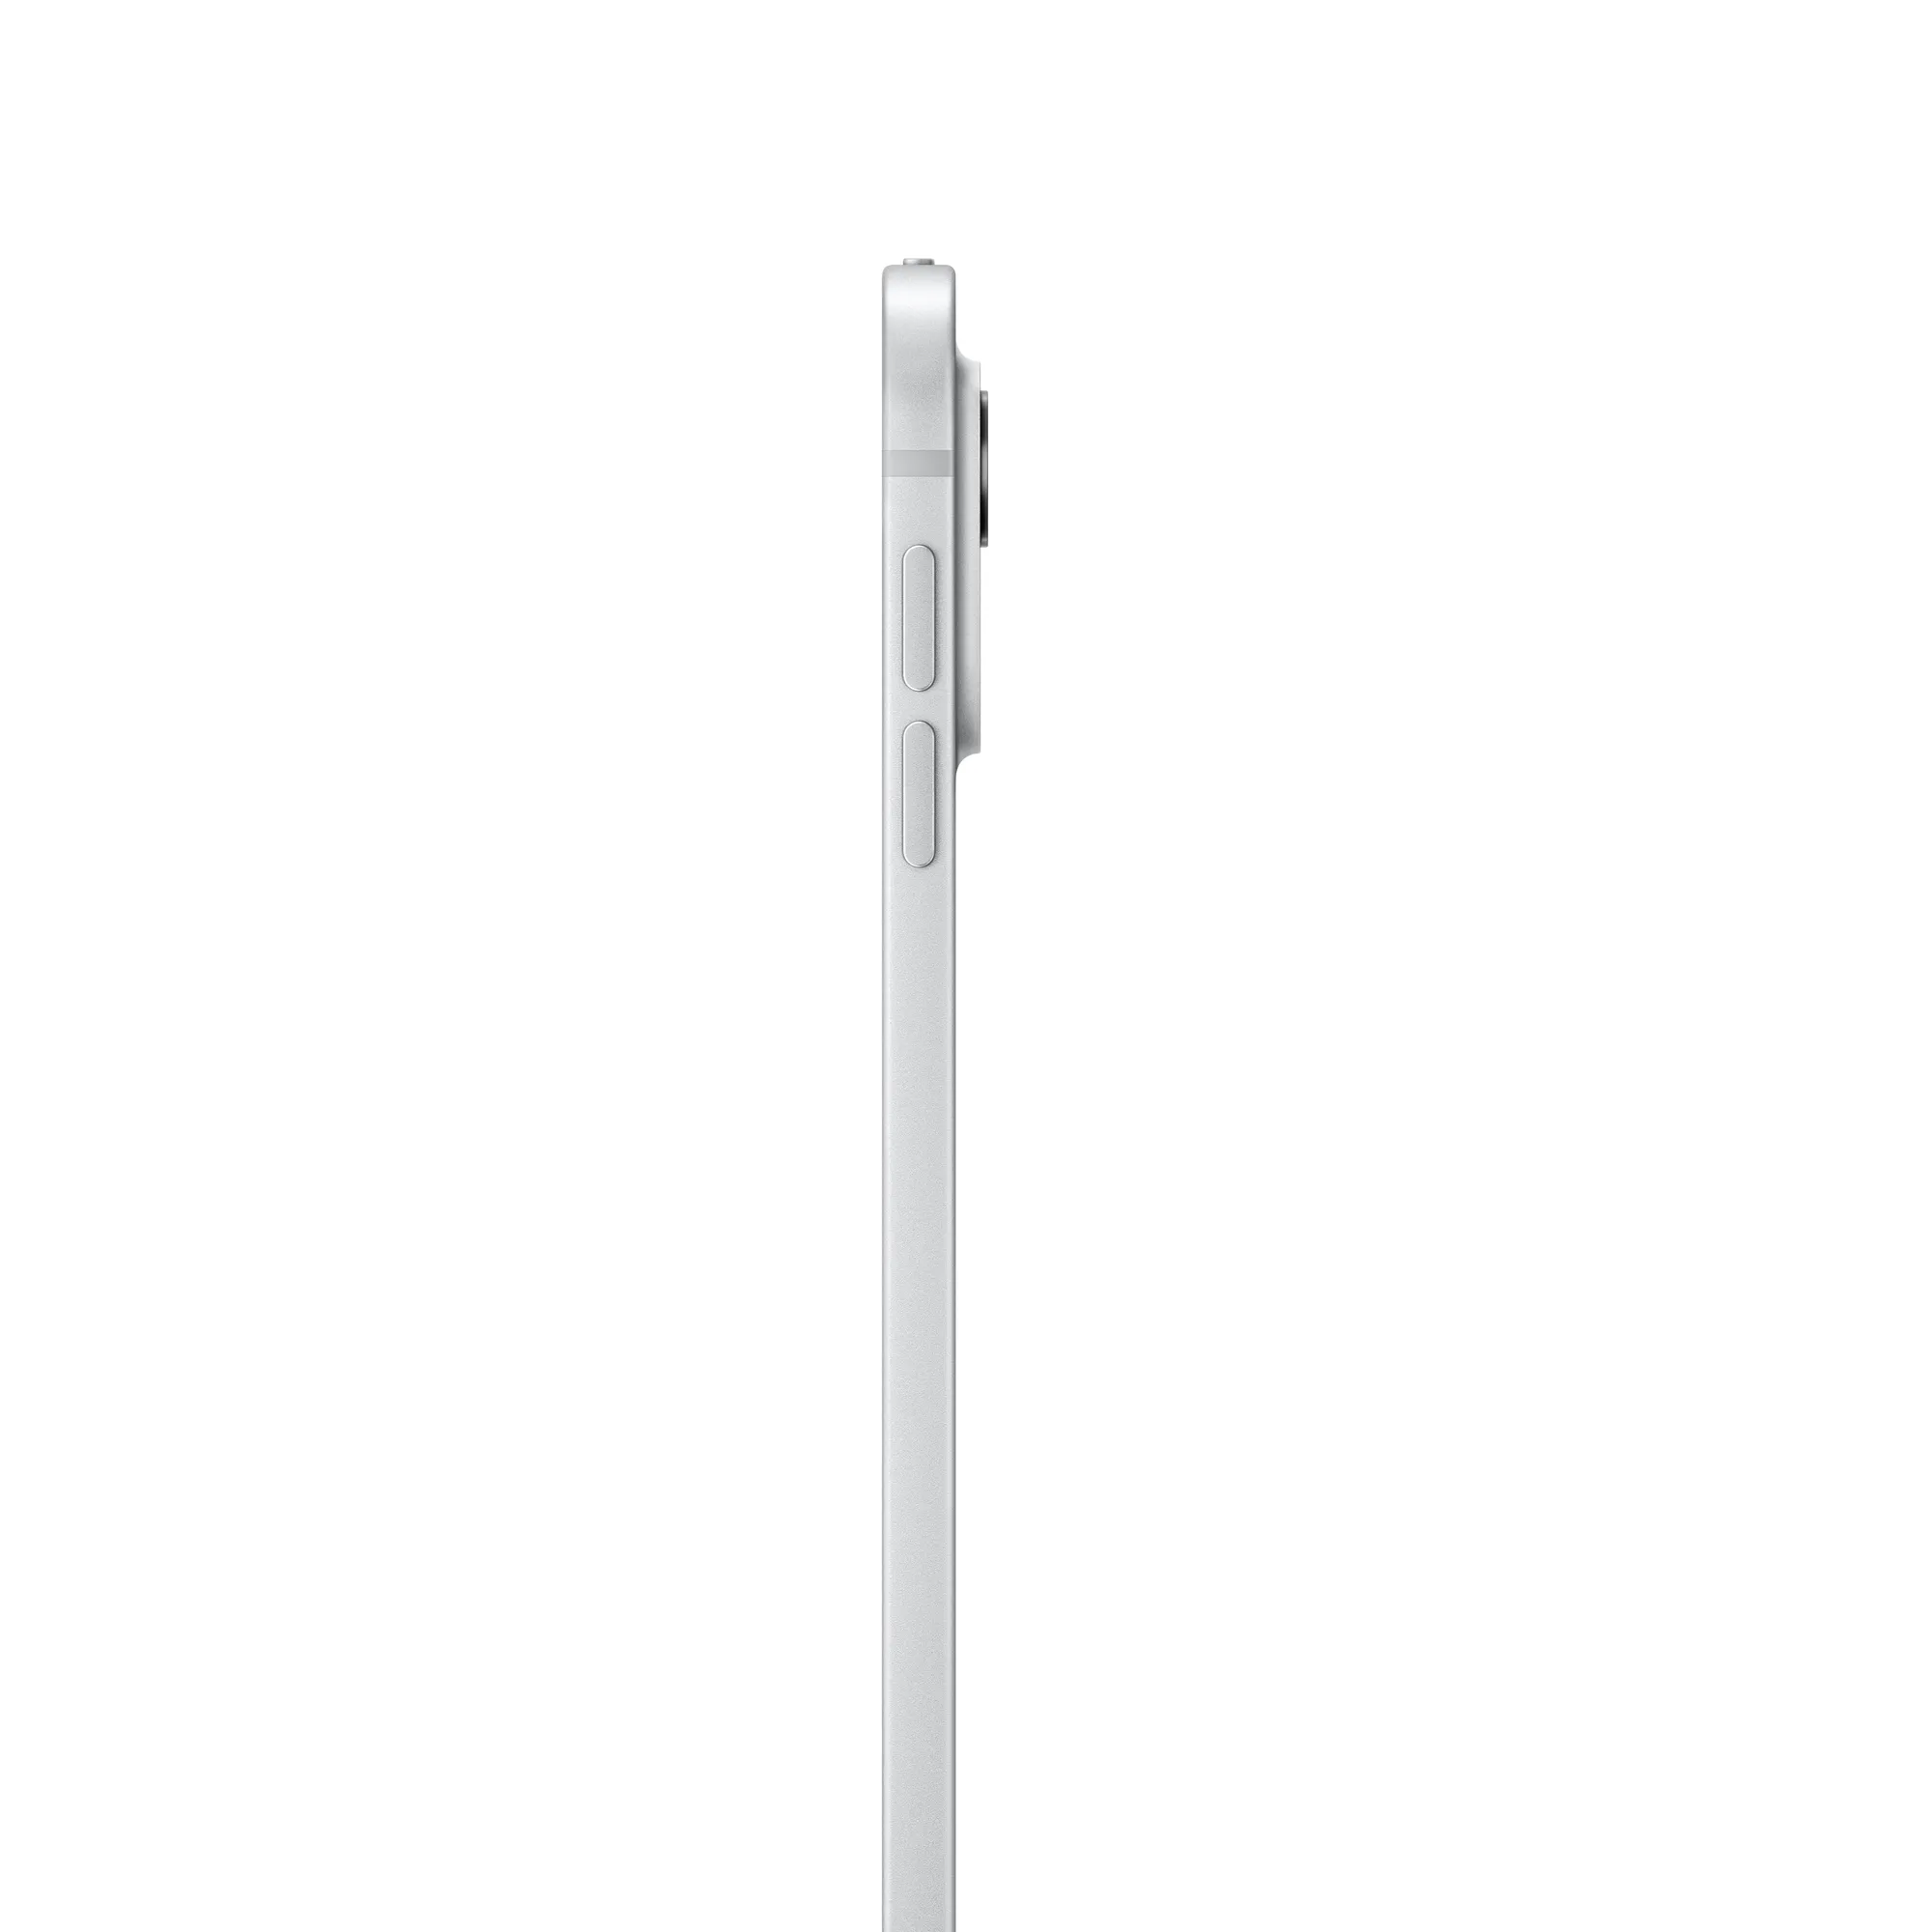 13 hüvelykes iPad Pro, Wi-Fi, 512 GB, normál üveg – ezüst